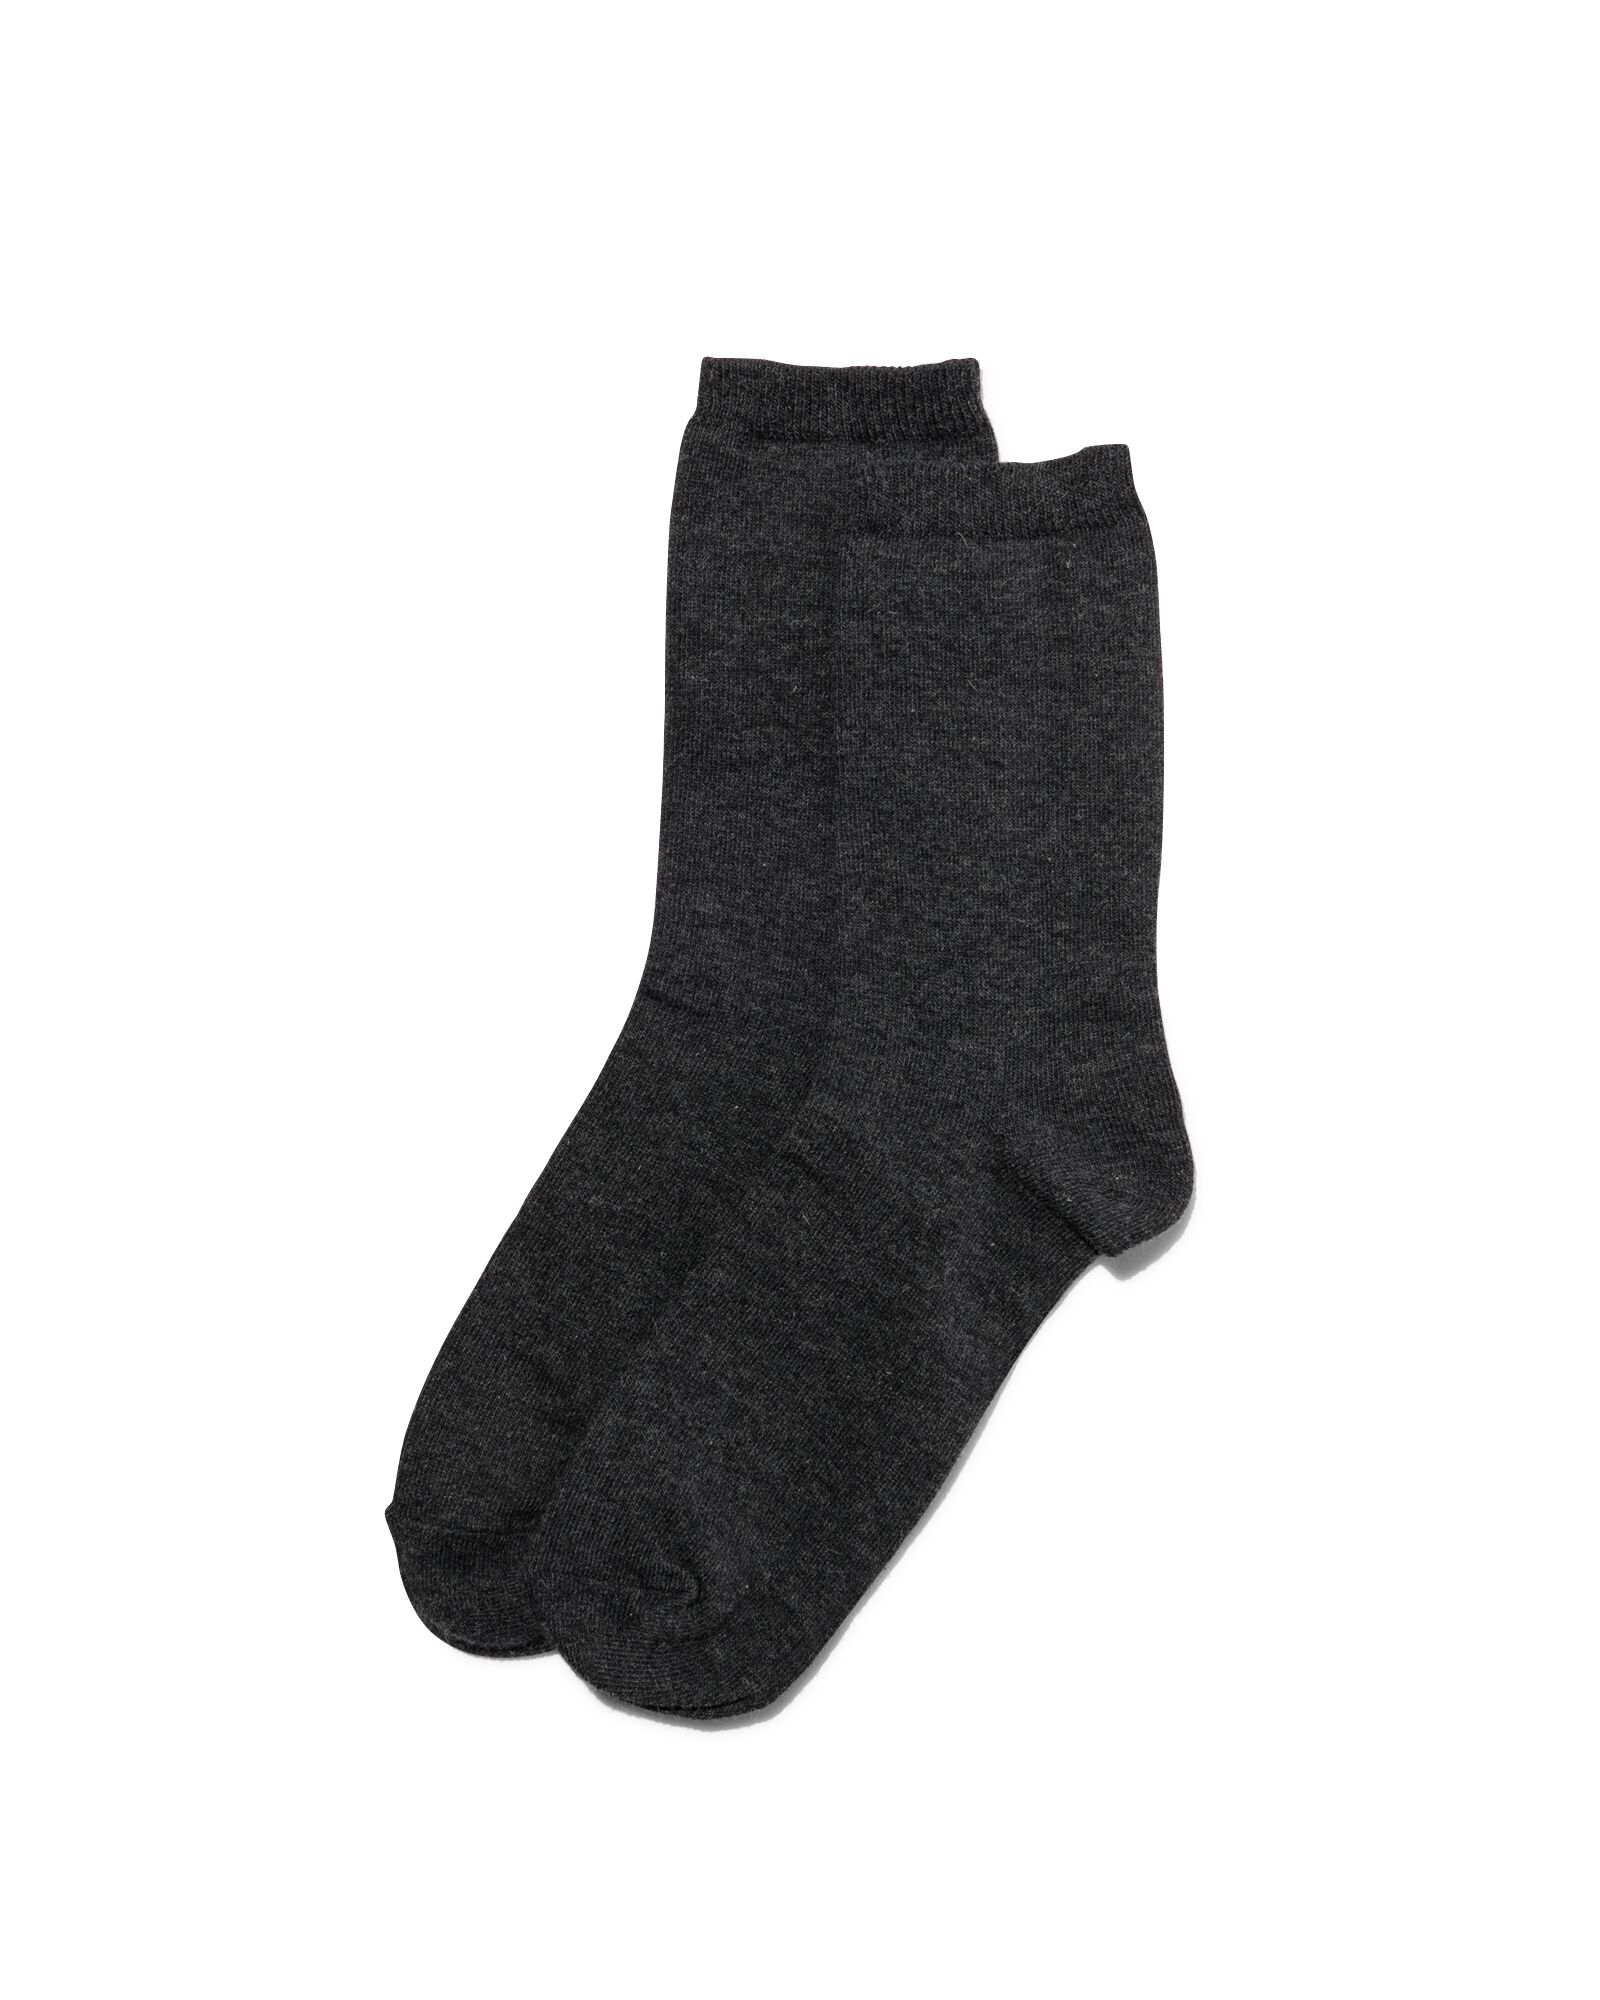 sokken met wol - 2 paar grijs grijs - 1000017156 - HEMA